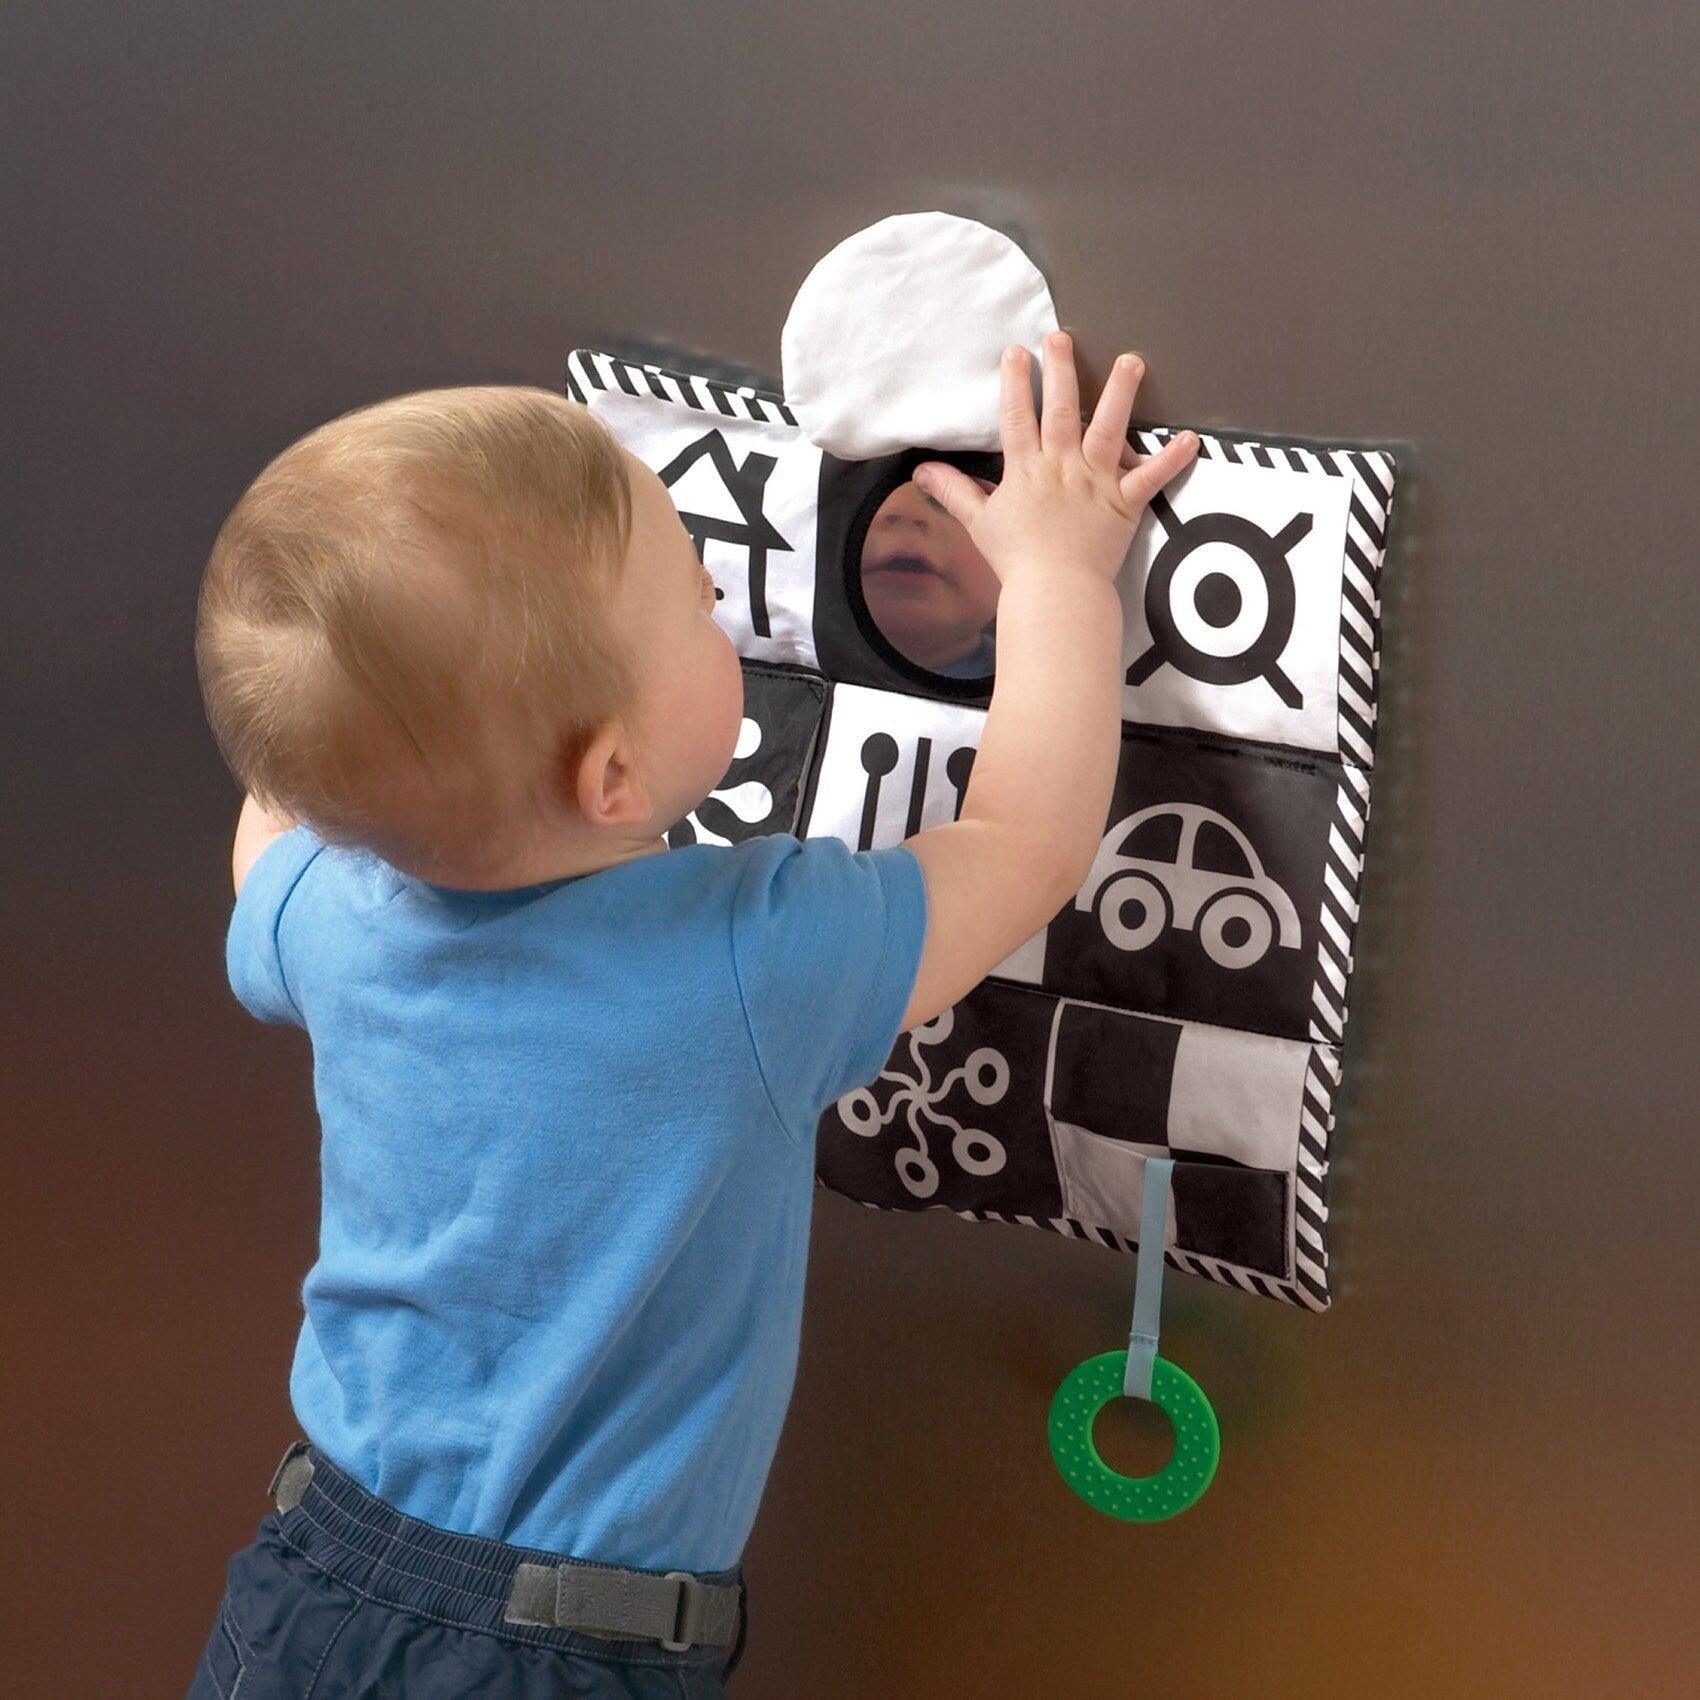 Manhattan Toy: Kontrasztos oktatási szőnyeg a csecsemők számára Wimmer-Feguson